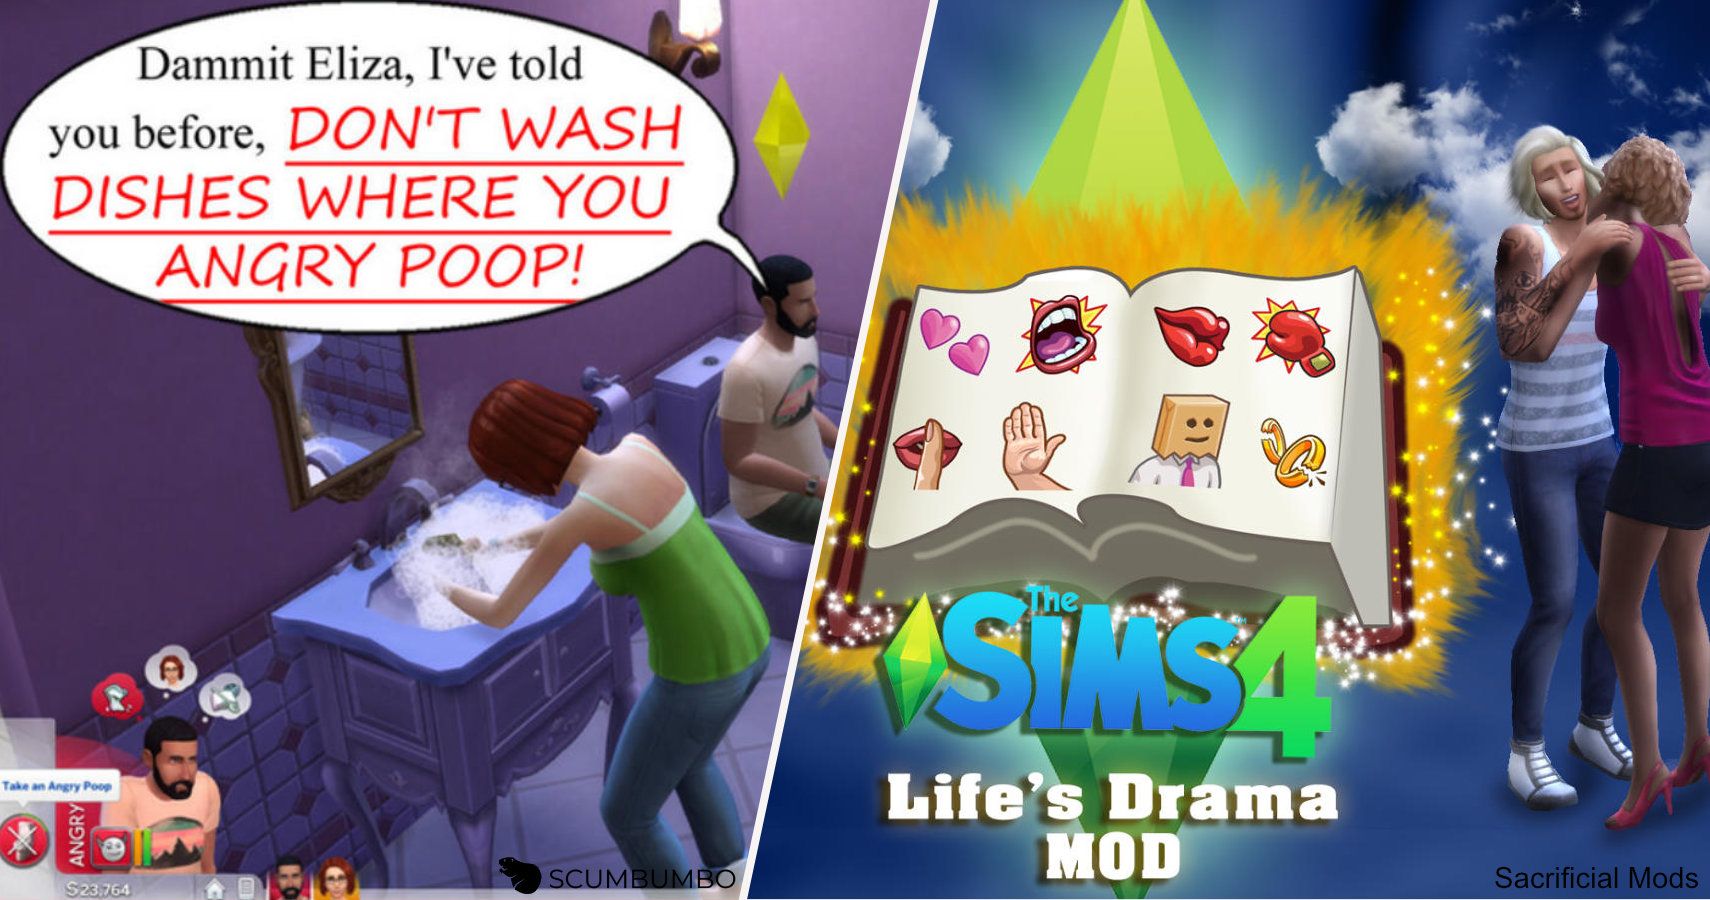 slice of life mod sims 4 safe download reddit